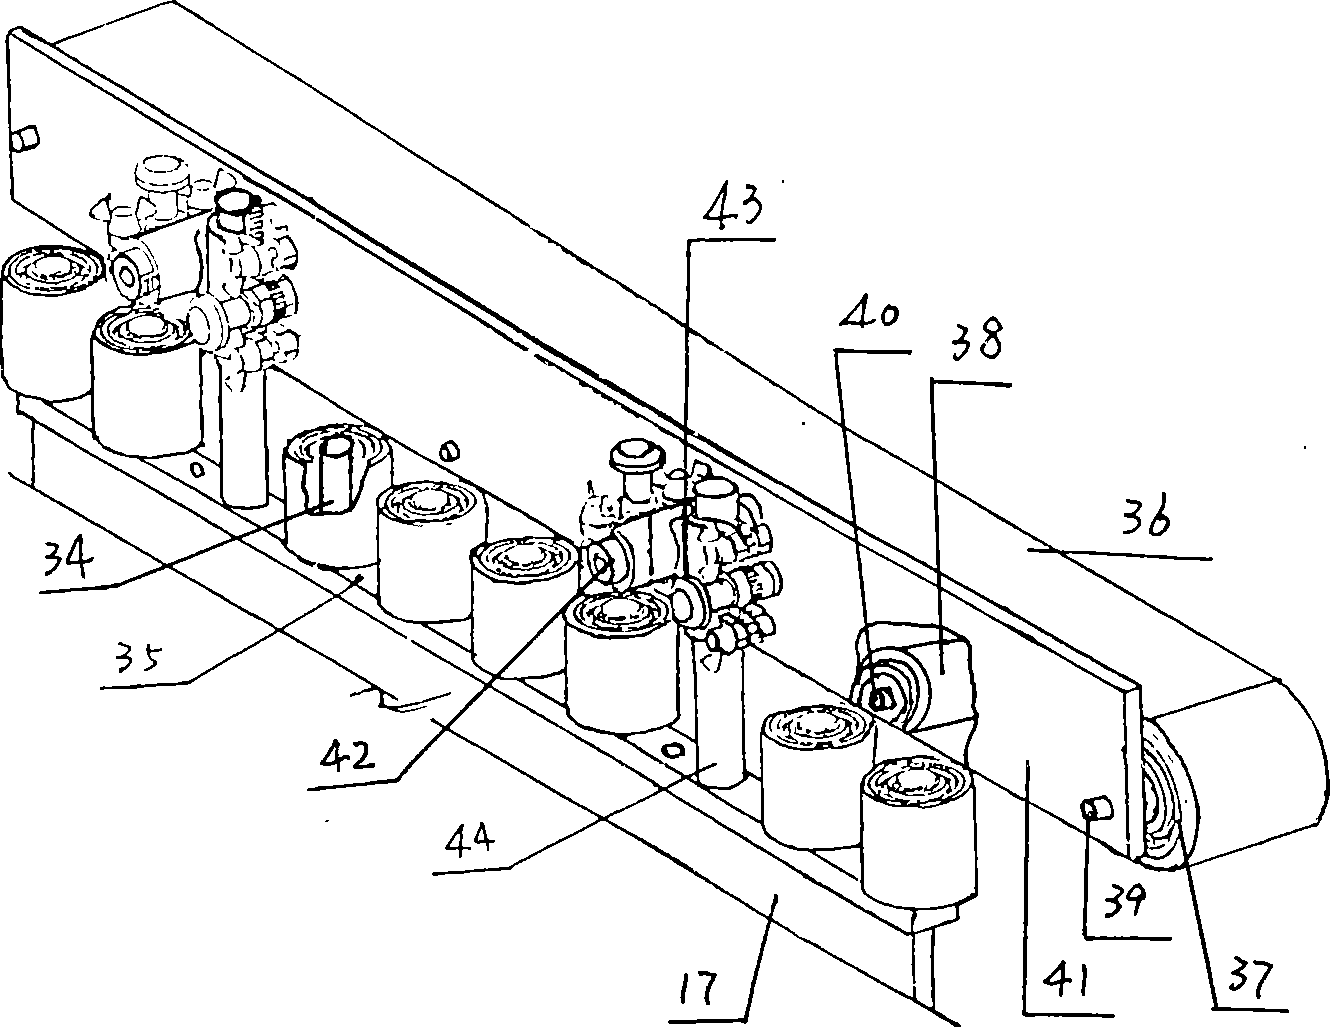 Nailing machine of corrugated case